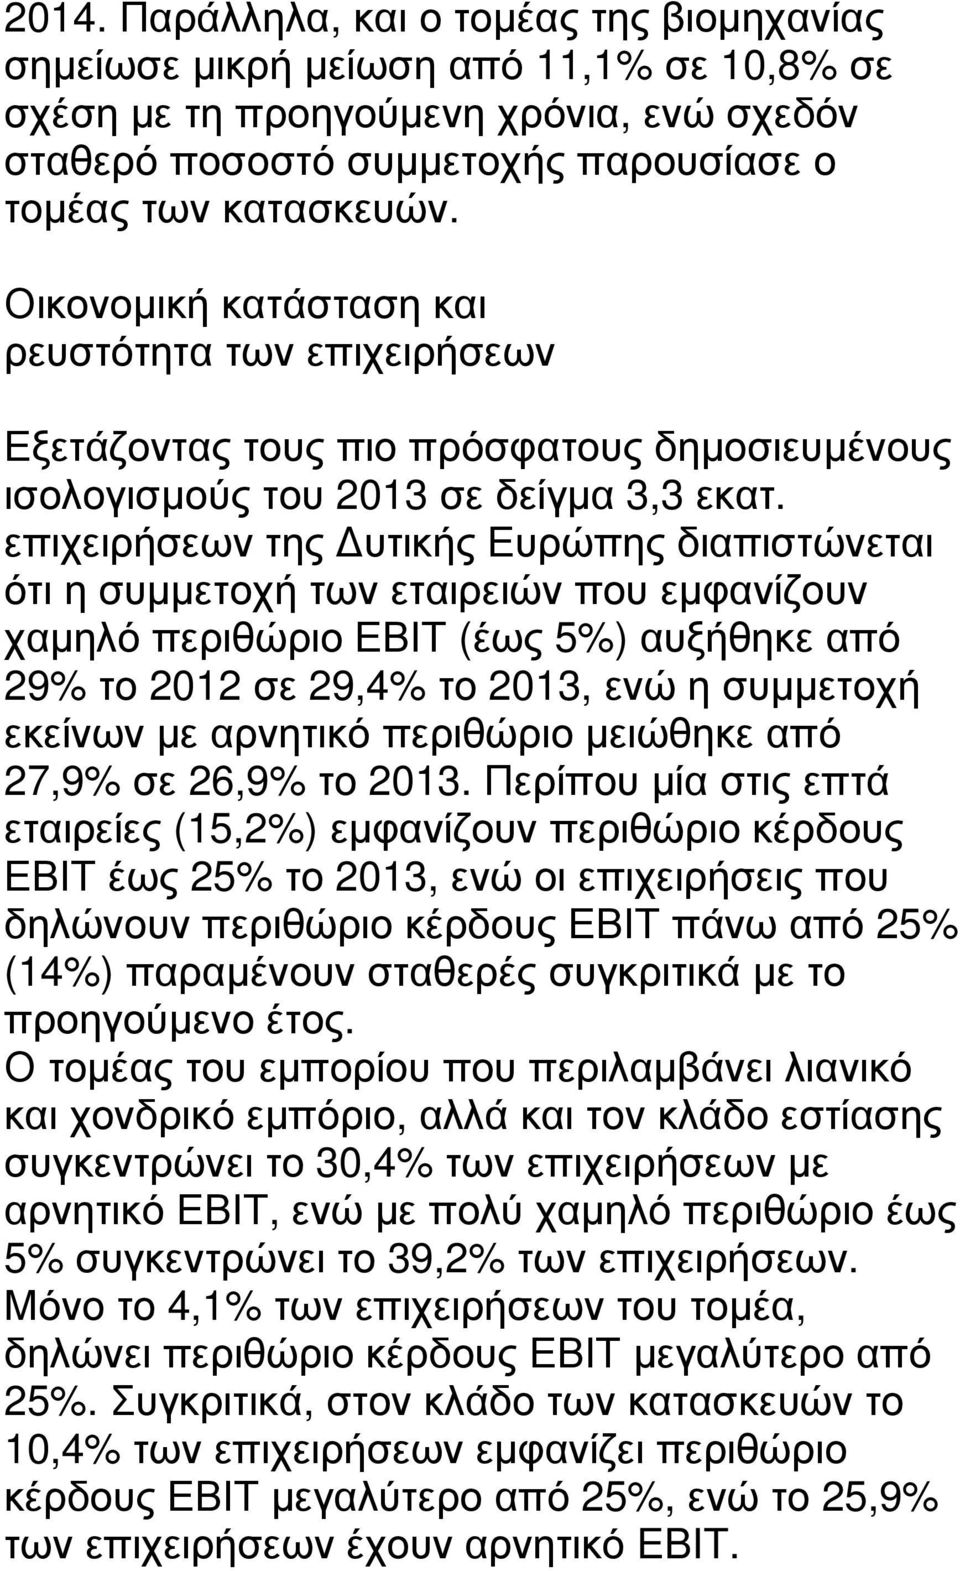 επιχειρήσεων της υτικής Ευρώπης διαπιστώνεται ότι η συµµετοχή των εταιρειών που εµφανίζουν χαµηλό περιθώριο ΕΒΙΤ (έως 5%) αυξήθηκε από 29% το 2012 σε 29,4% το 2013, ενώ η συµµετοχή εκείνων µε